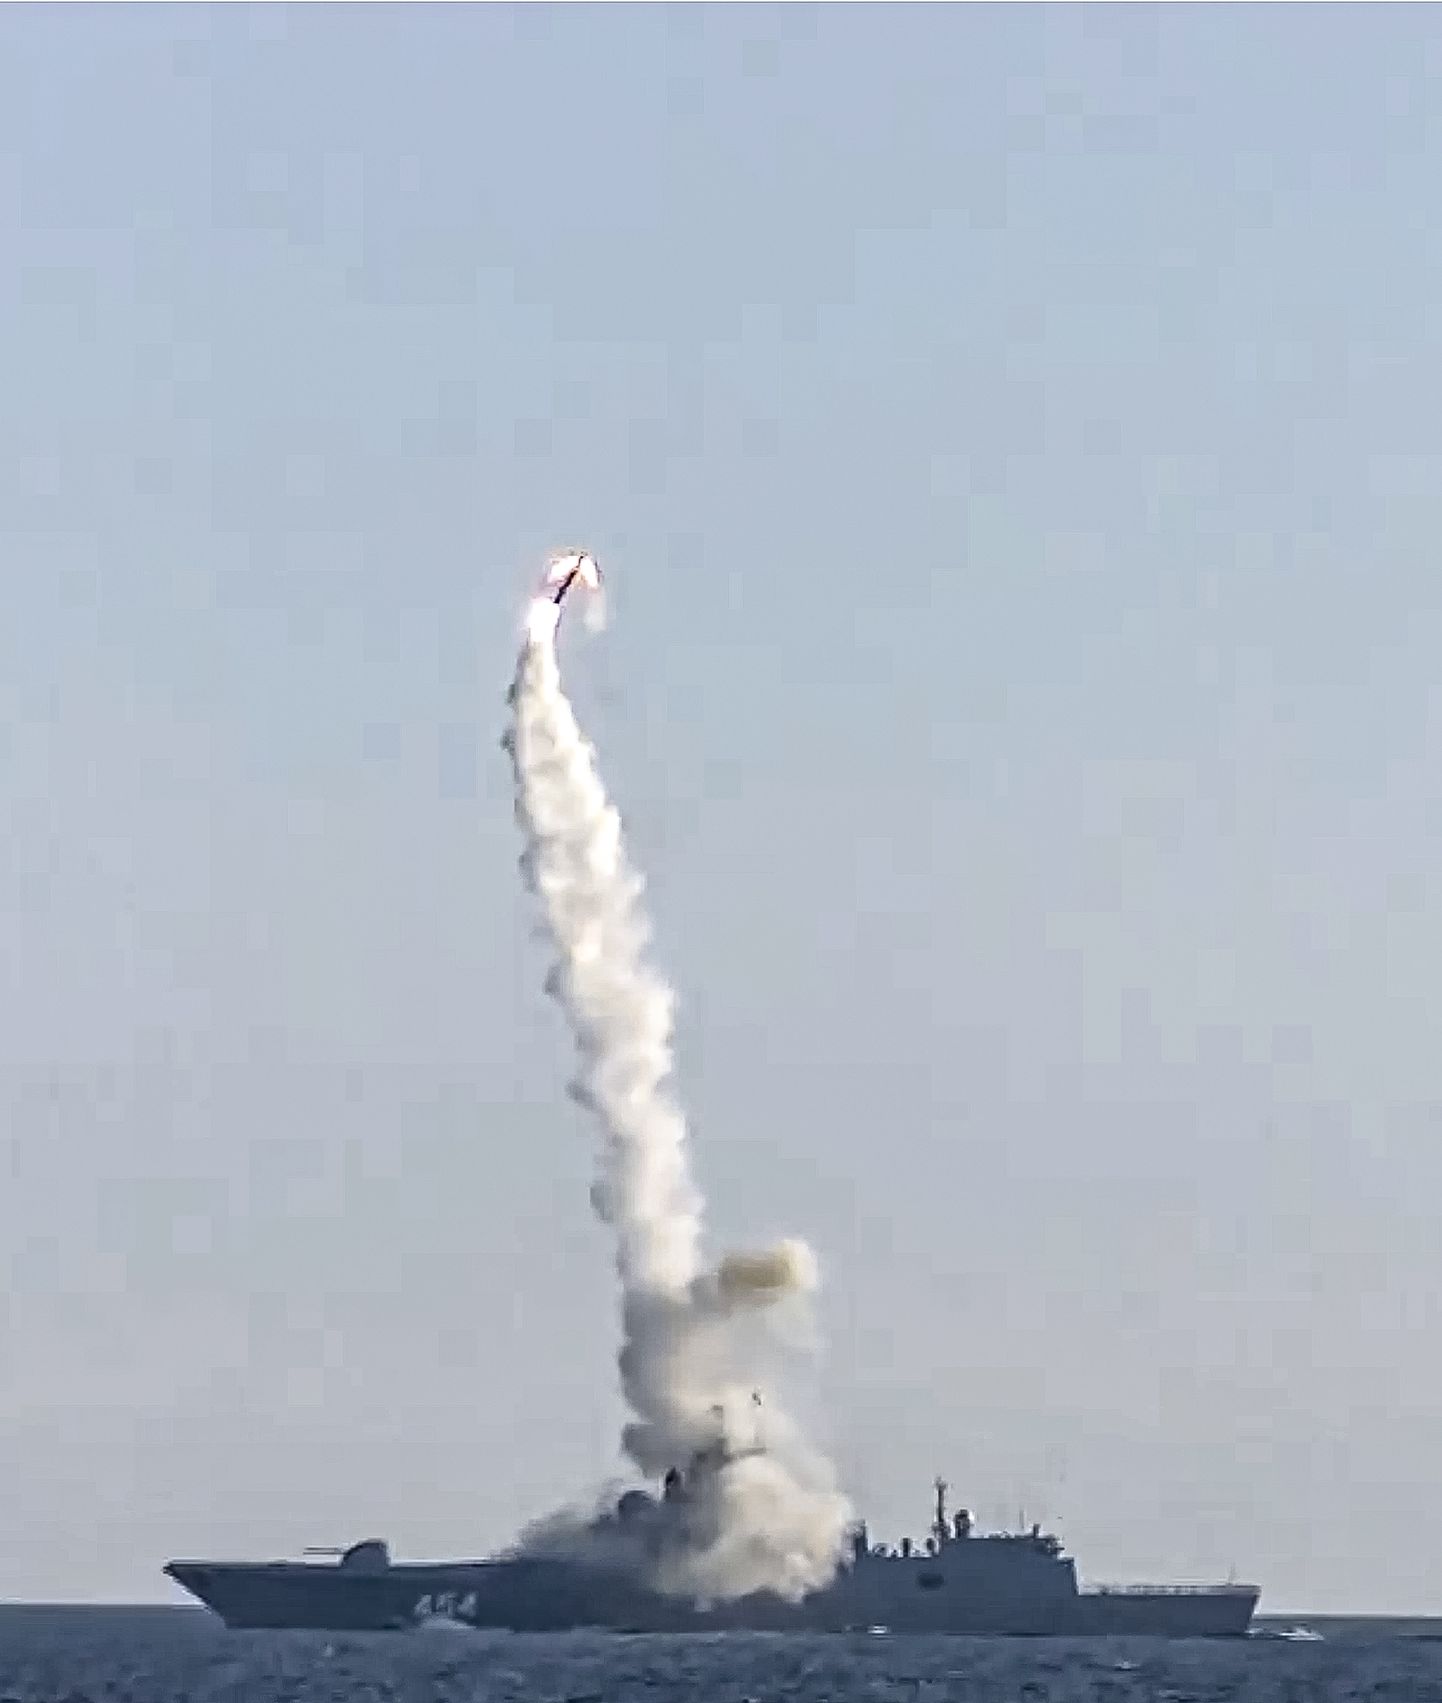 Krievijā pirmo reizi veikts jaunās hiperskaņas spārnotās raķetes "Cirkon" izmēģinājums.